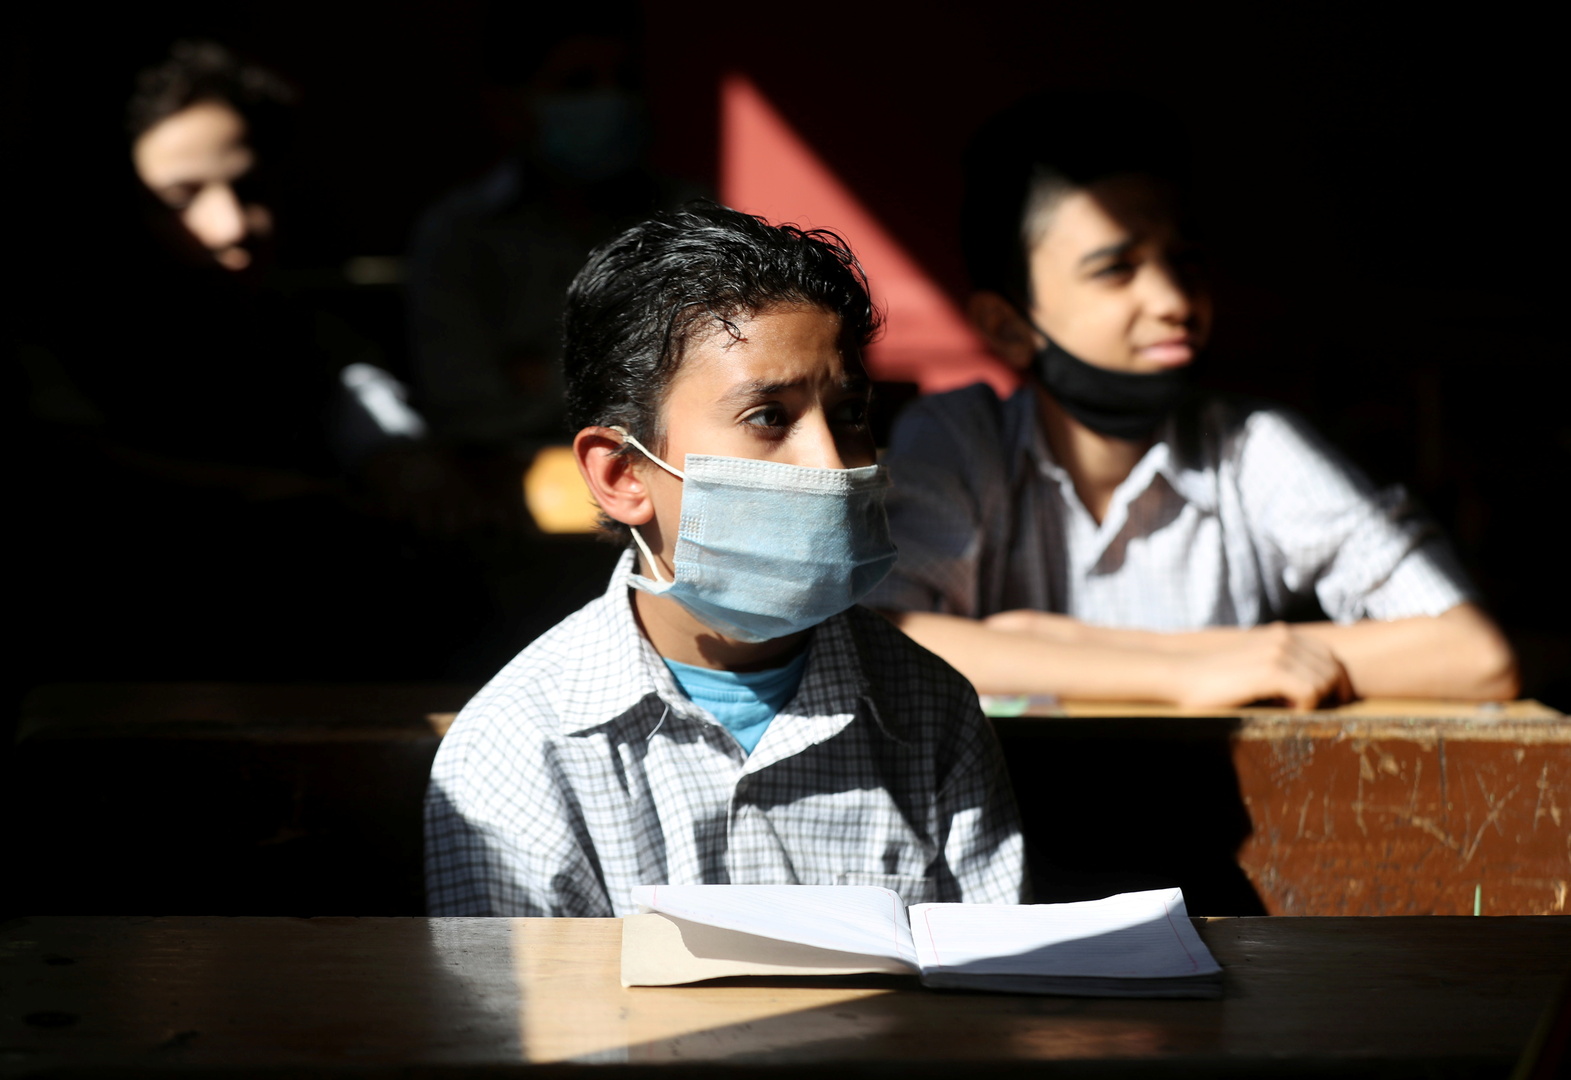 خطوبة جديدة بين طفلين في مصر تثير ضجة.. والسلطات تتدخل (صورة)